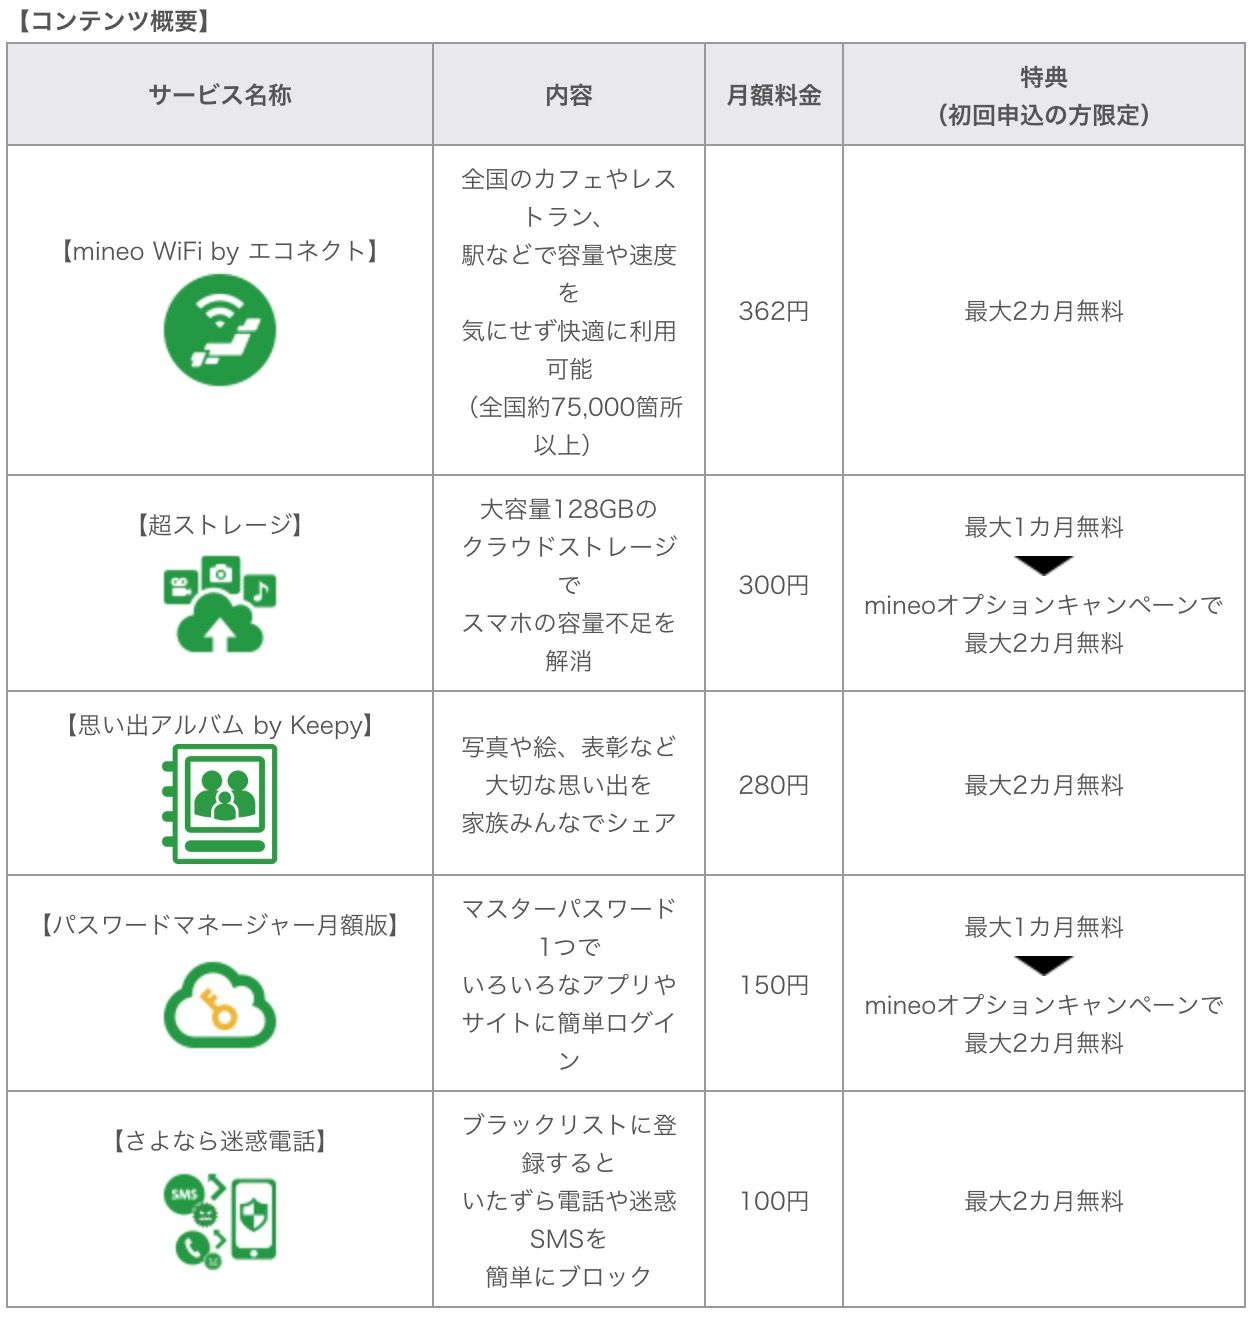 mineo、｢mineo紹介キャンペーン｣を開始 − 新たに5つのオプションサービスも追加